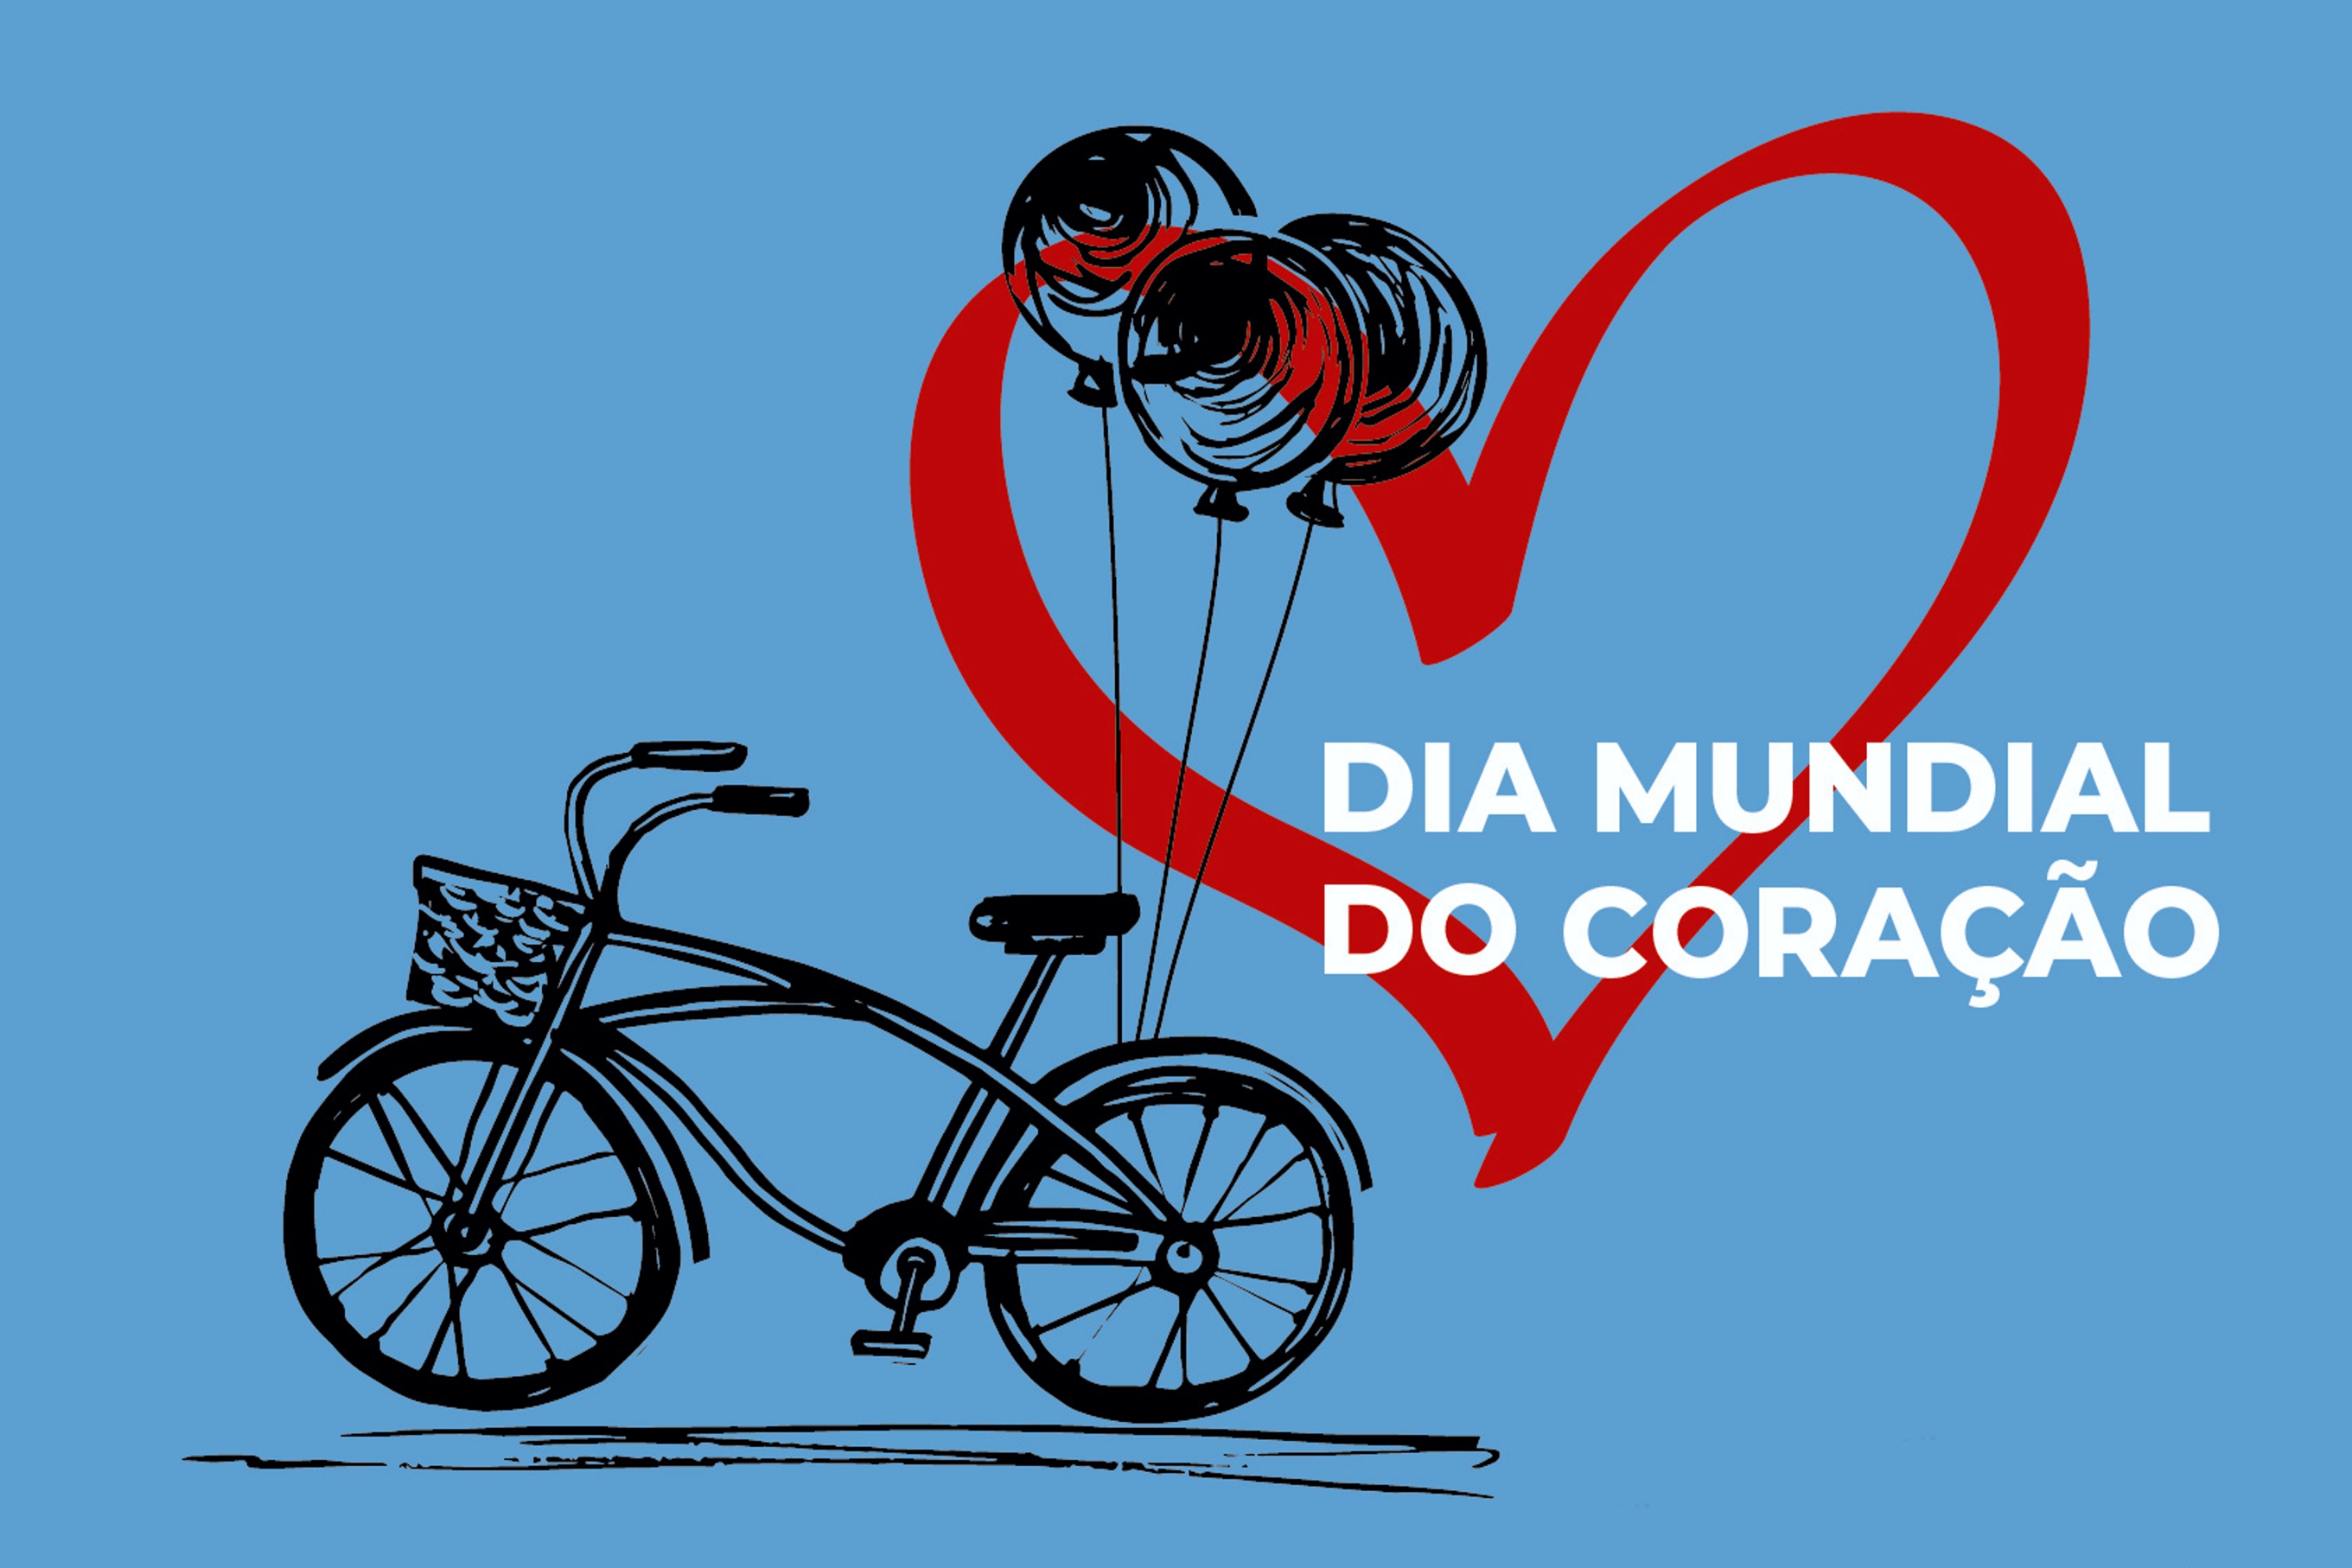 Cartaz com fundo azul com o desenho de uma bicicleta preta, 3 balões pretos presos à bicicleta e o desenho de um coração vermelho com preenchimento a azul, com a frase «Dia Mundial do Coração».